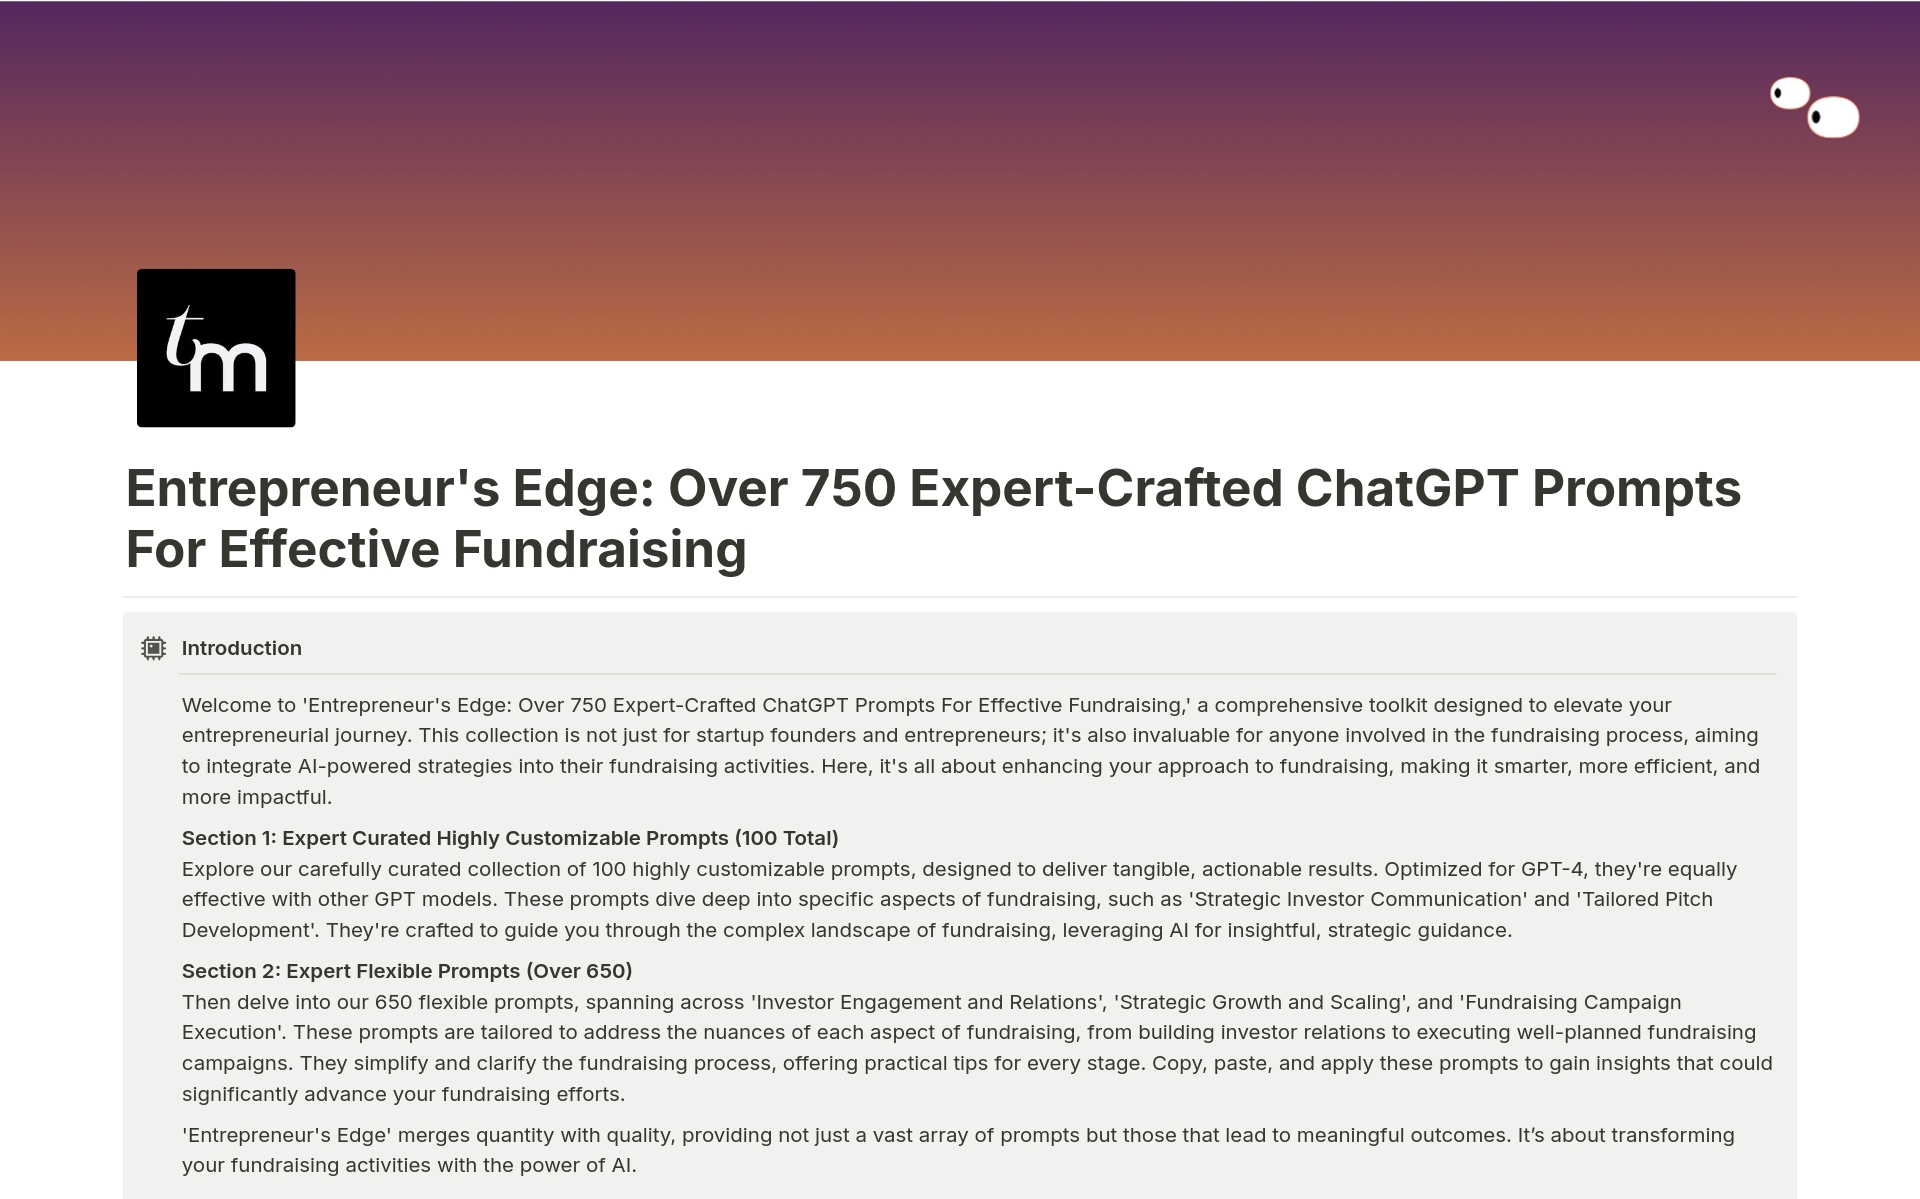 Uma prévia do modelo para Expert Crafted Fundraising Prompts for ChatGPT